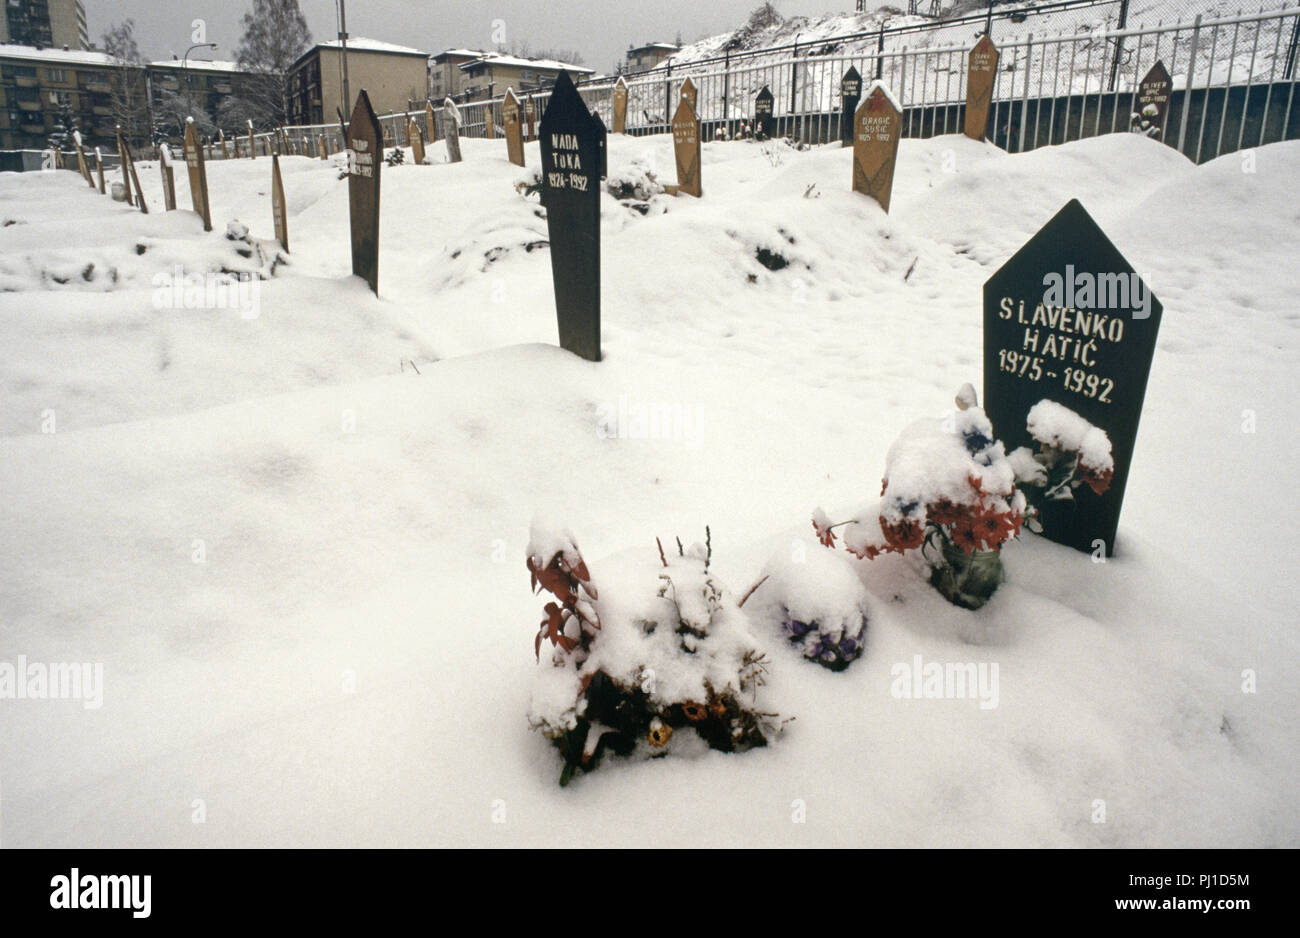 4 Marzo 1993 durante l'assedio di Sarajevo: fiori, soffocato con neve, contrassegnare la tomba di un diciassette anno-vecchio ragazzo in un angolo del cimitero di Lion, appena al di sotto dell'Ospedale Kosevo. Foto Stock